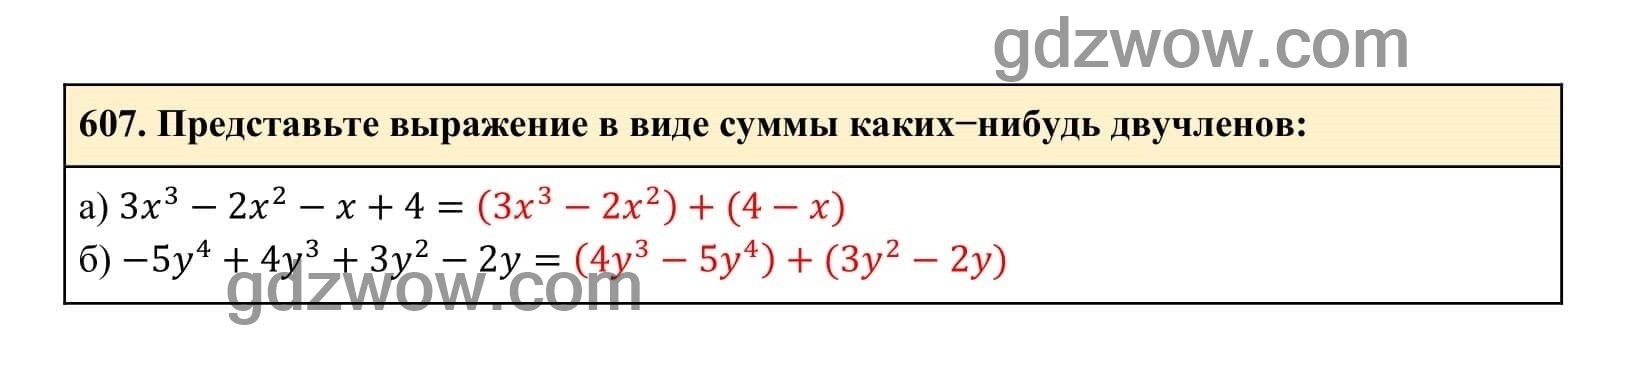 Упражнение 607 - ГДЗ по Алгебре 7 класс Учебник Макарычев (решебник) - GDZwow